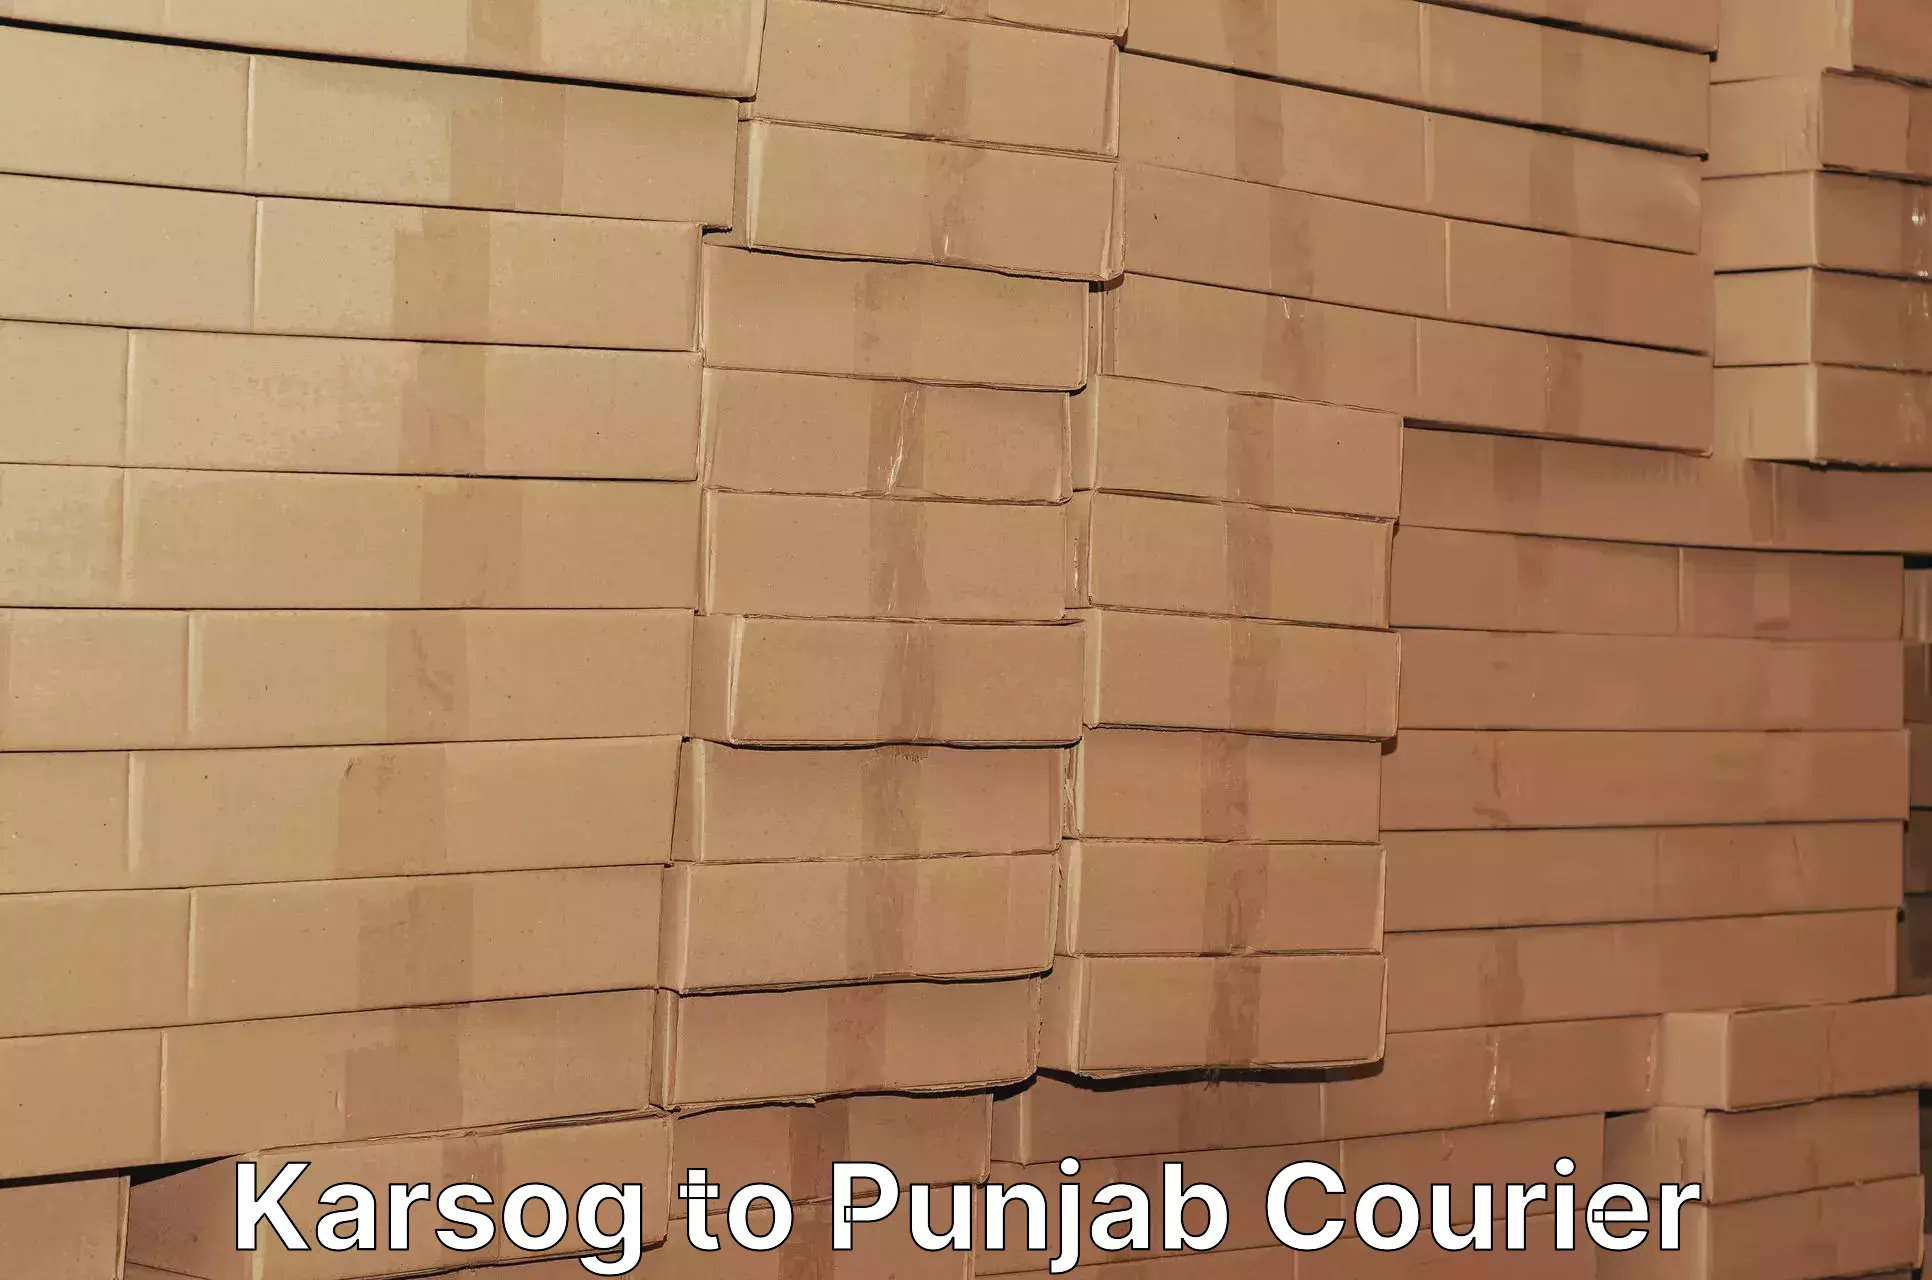 Package tracking Karsog to Punjab